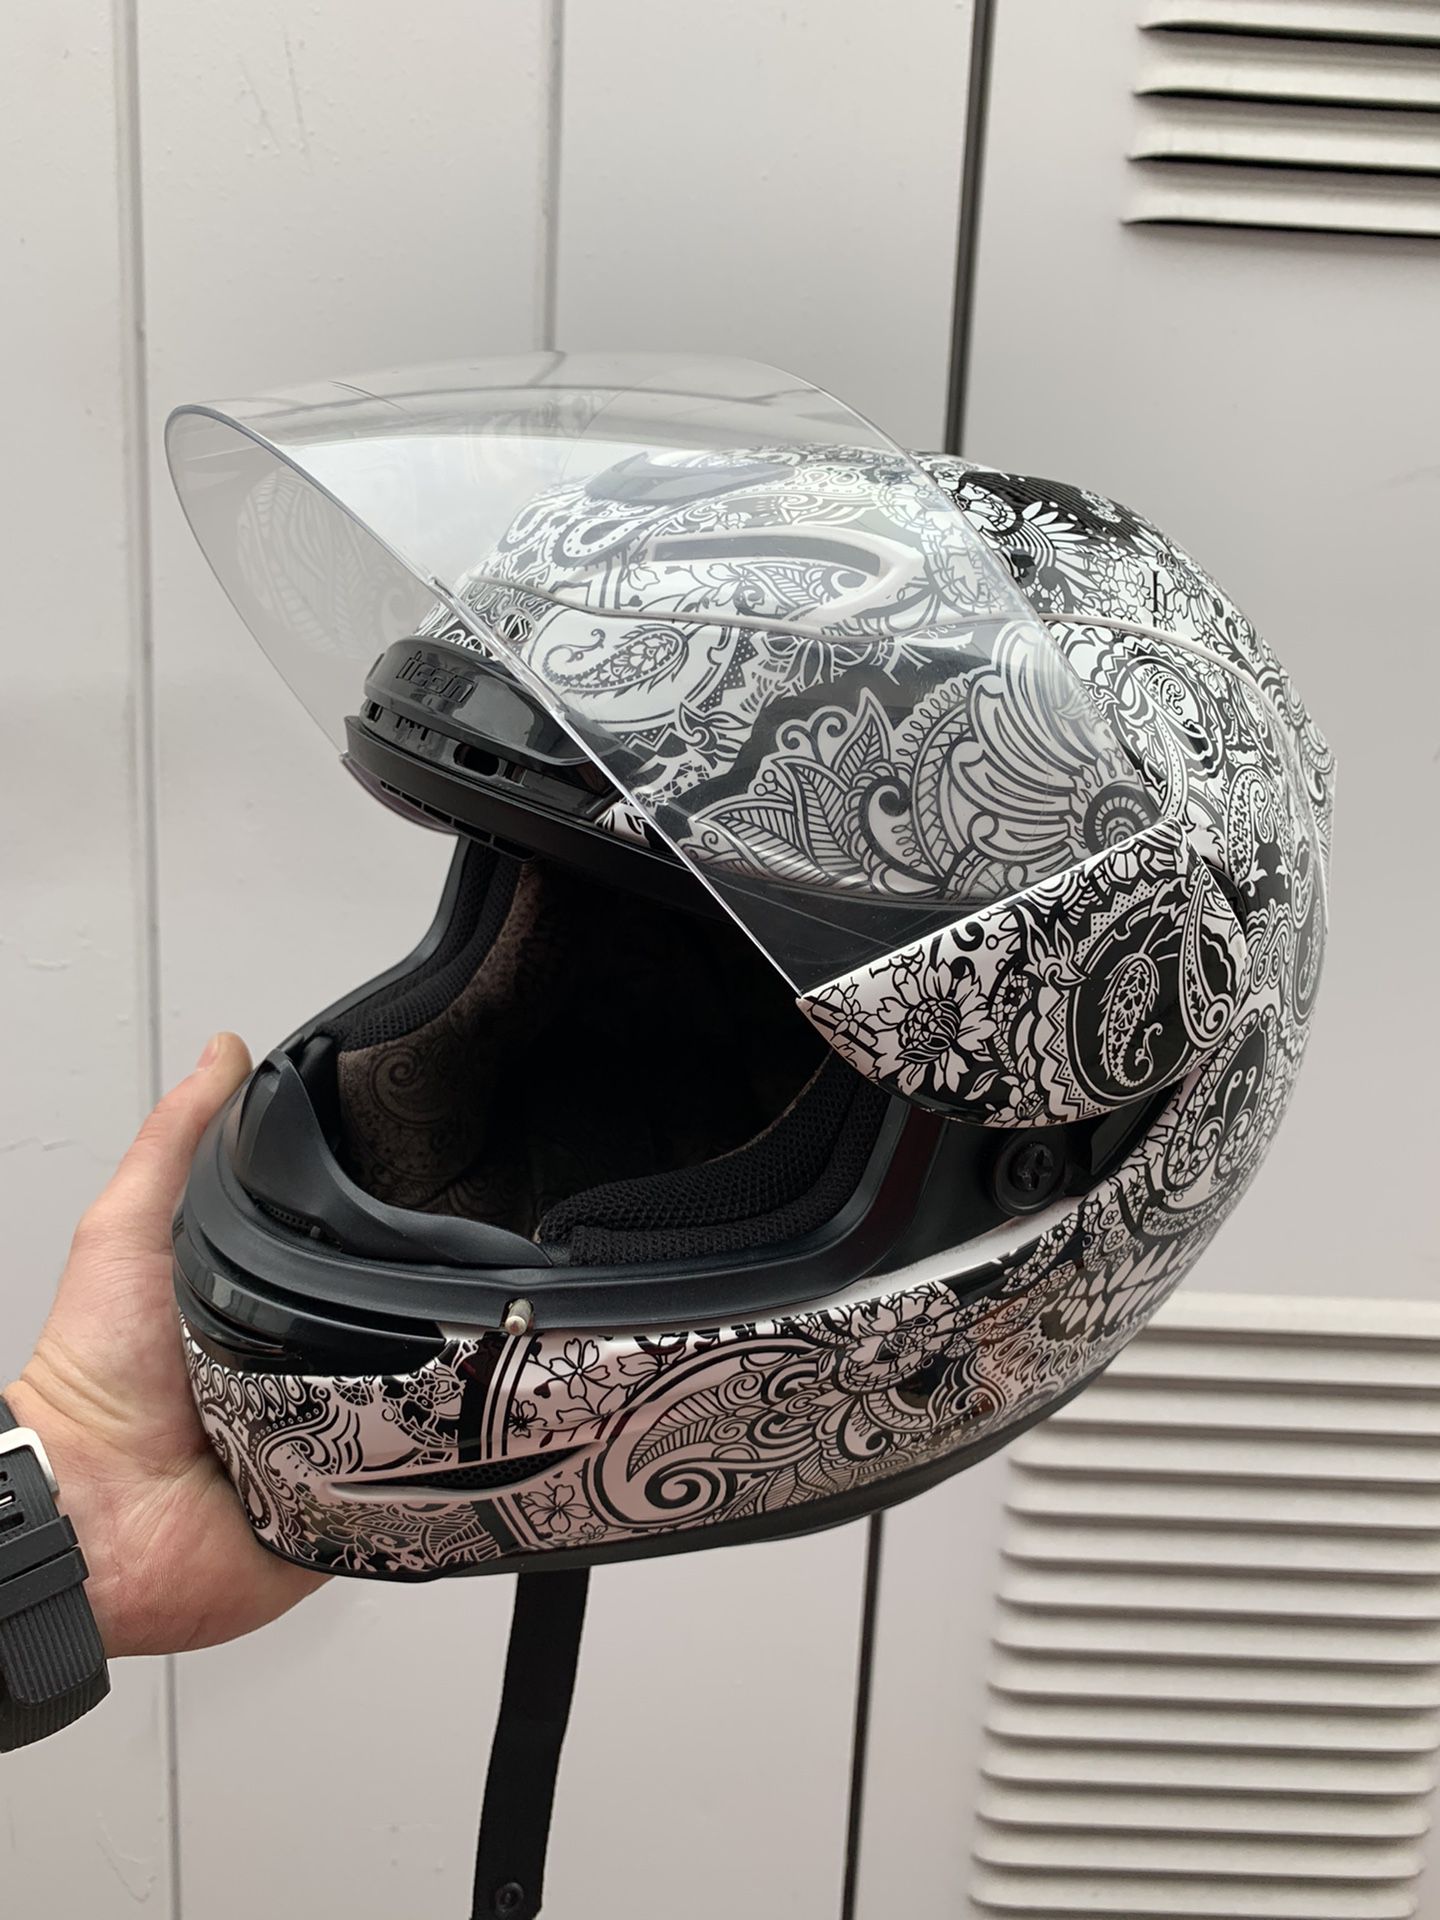 ICON motorcycle helmet - Size M